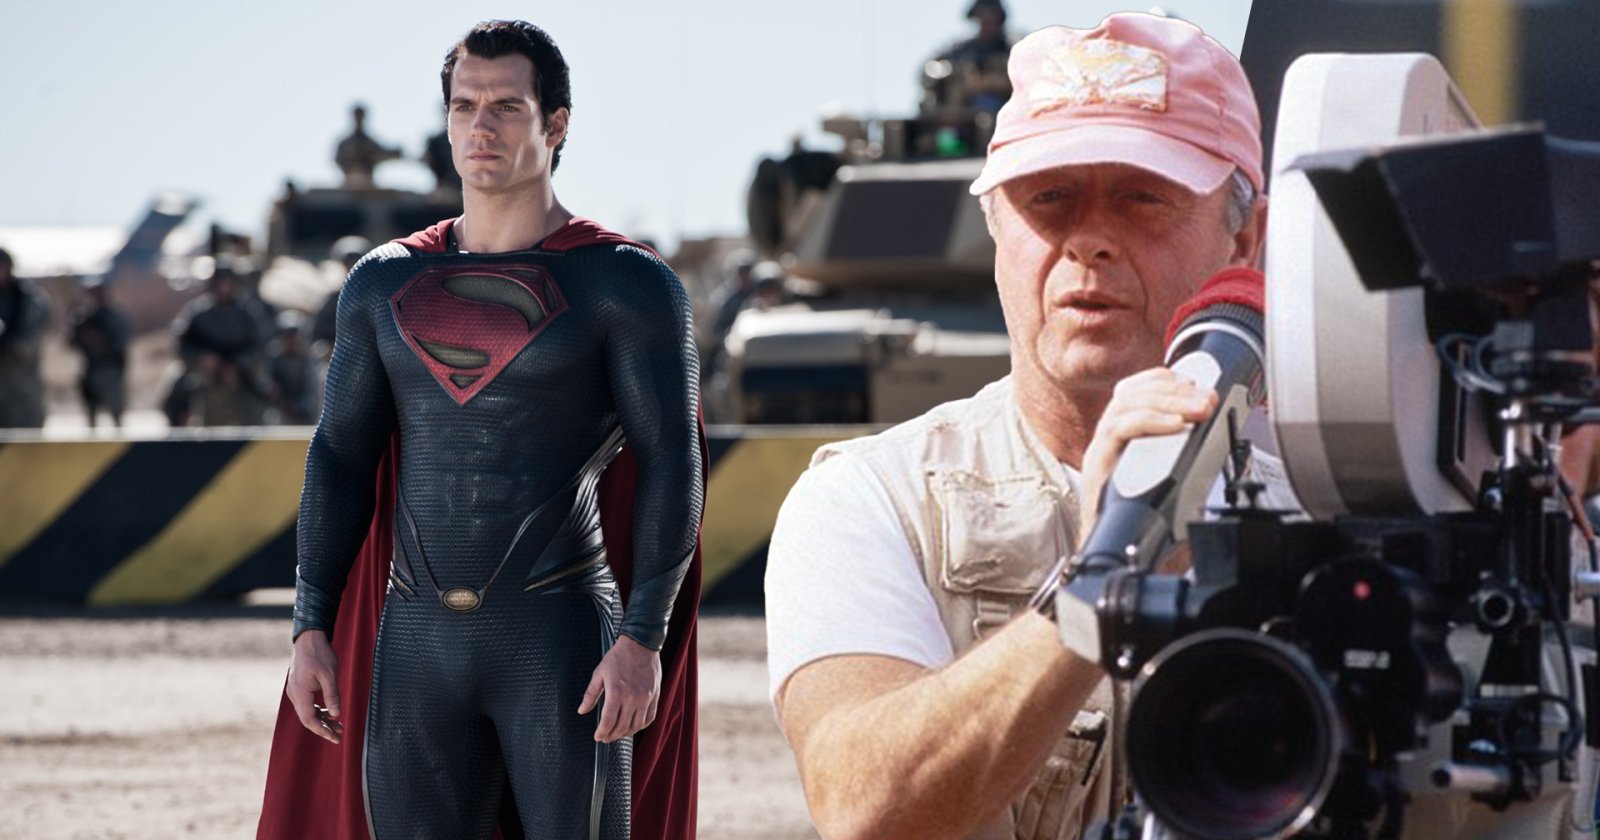 ผู้เขียนบท ‘Man of Steel’ เผย เกือบได้ Tony Scott ผู้กำกับ ‘Top Gun’ มากำกับ ก่อนได้ Zack Snyder มากำกับแทน